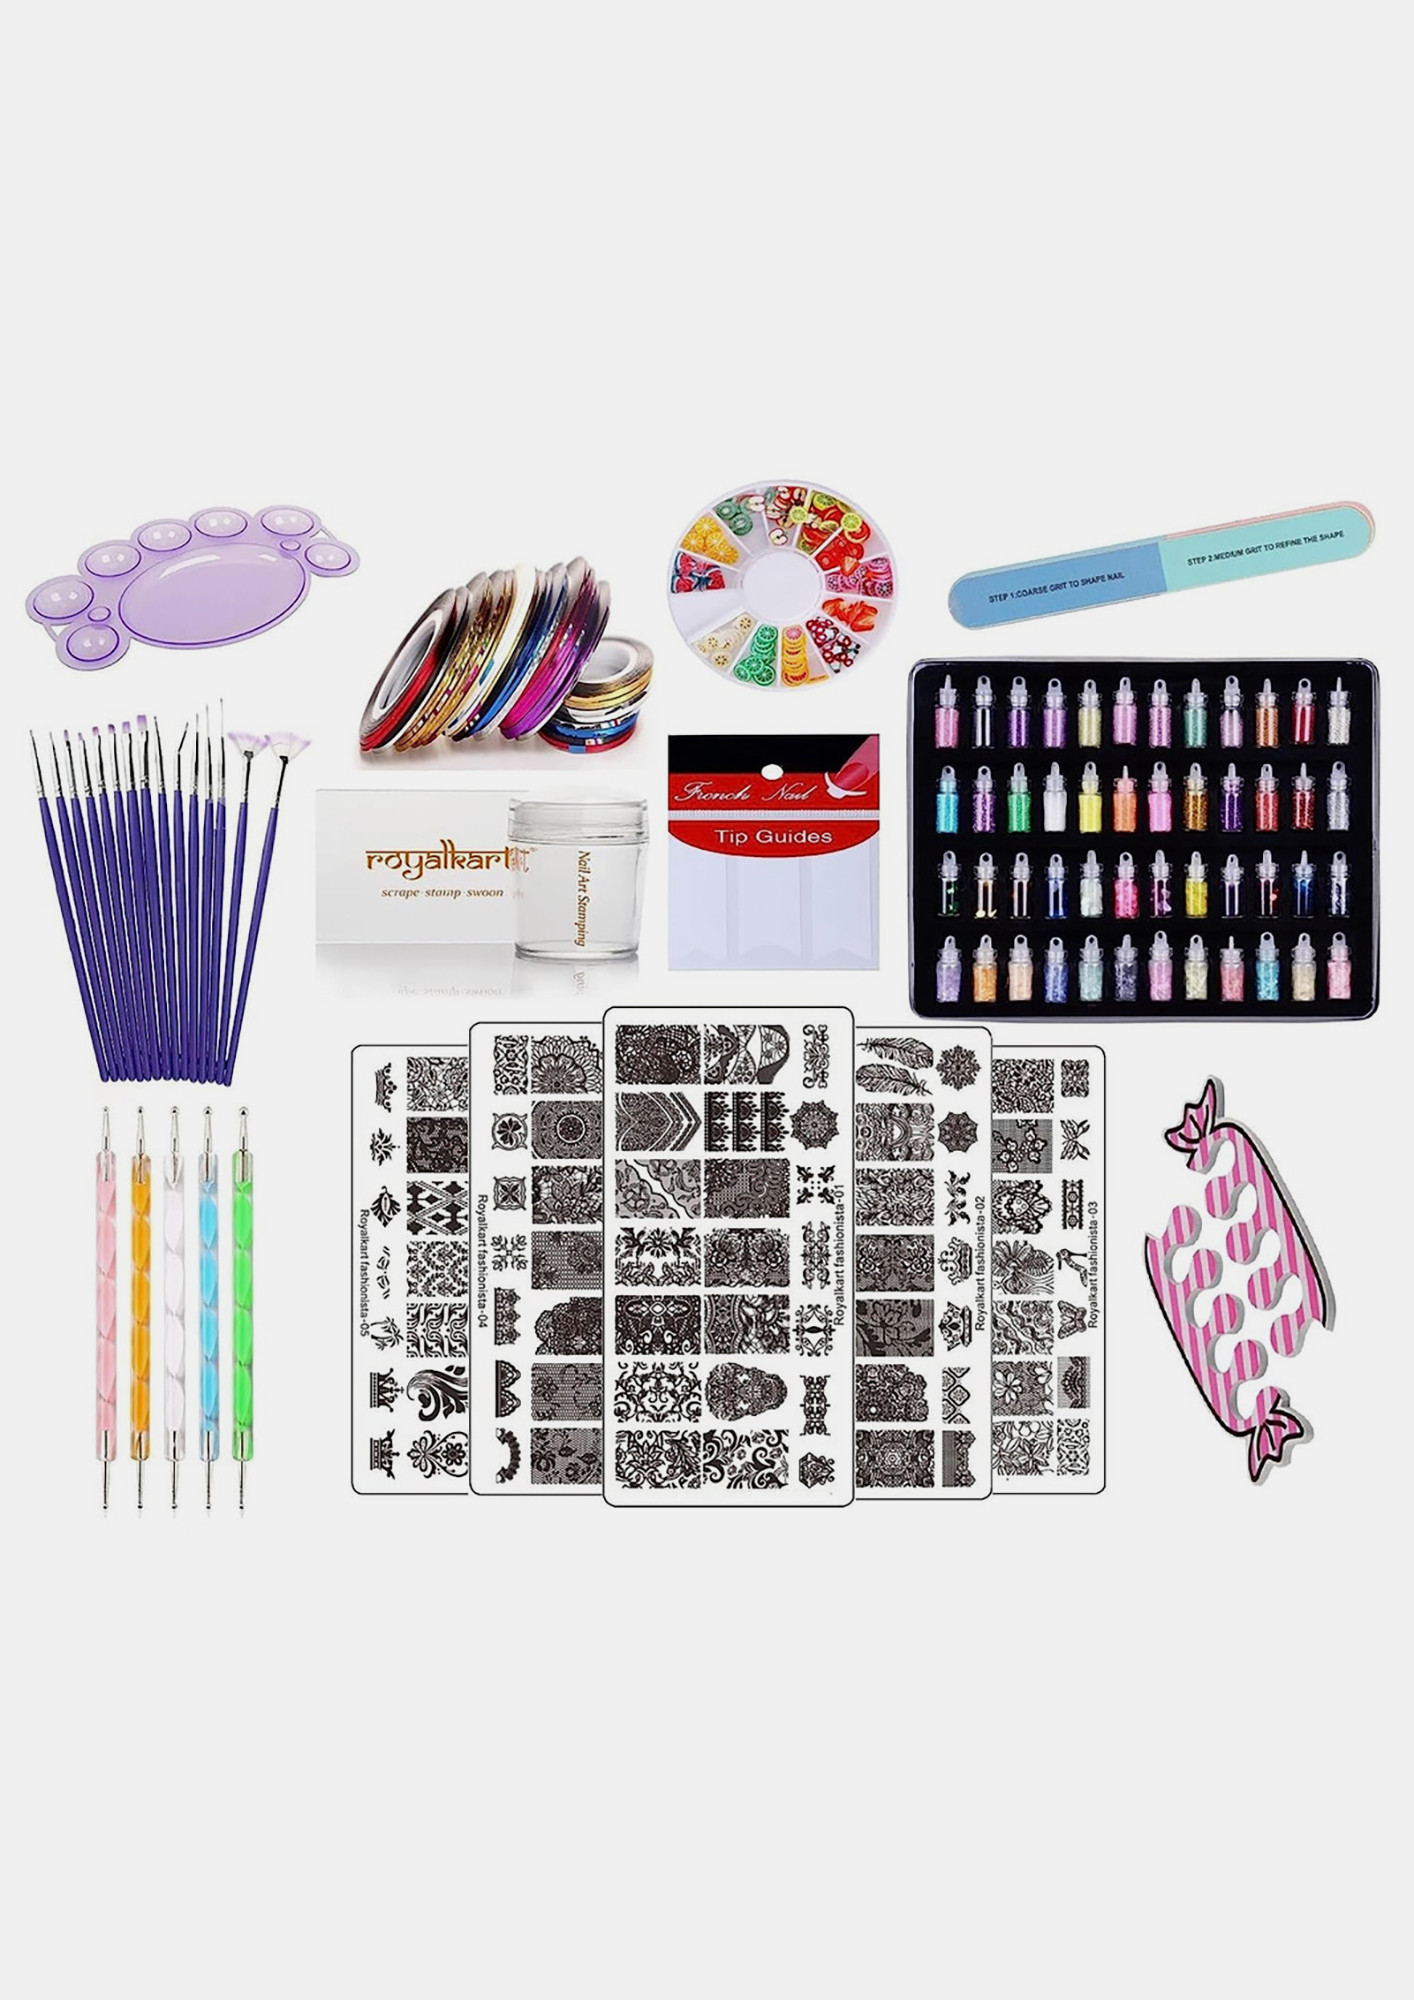 Buy Royalkart Nail Art Kit For Girls, 48 Pcs Glitter Bottles Rhinestones, 15  Nail Art brush, 5 Stamping Plates,Dotting Pen, French Nail  Stamper,Scraper,Finger Rest,Nail Art Buffer,Fimo Clay Wheel,Finger Tip  Guide